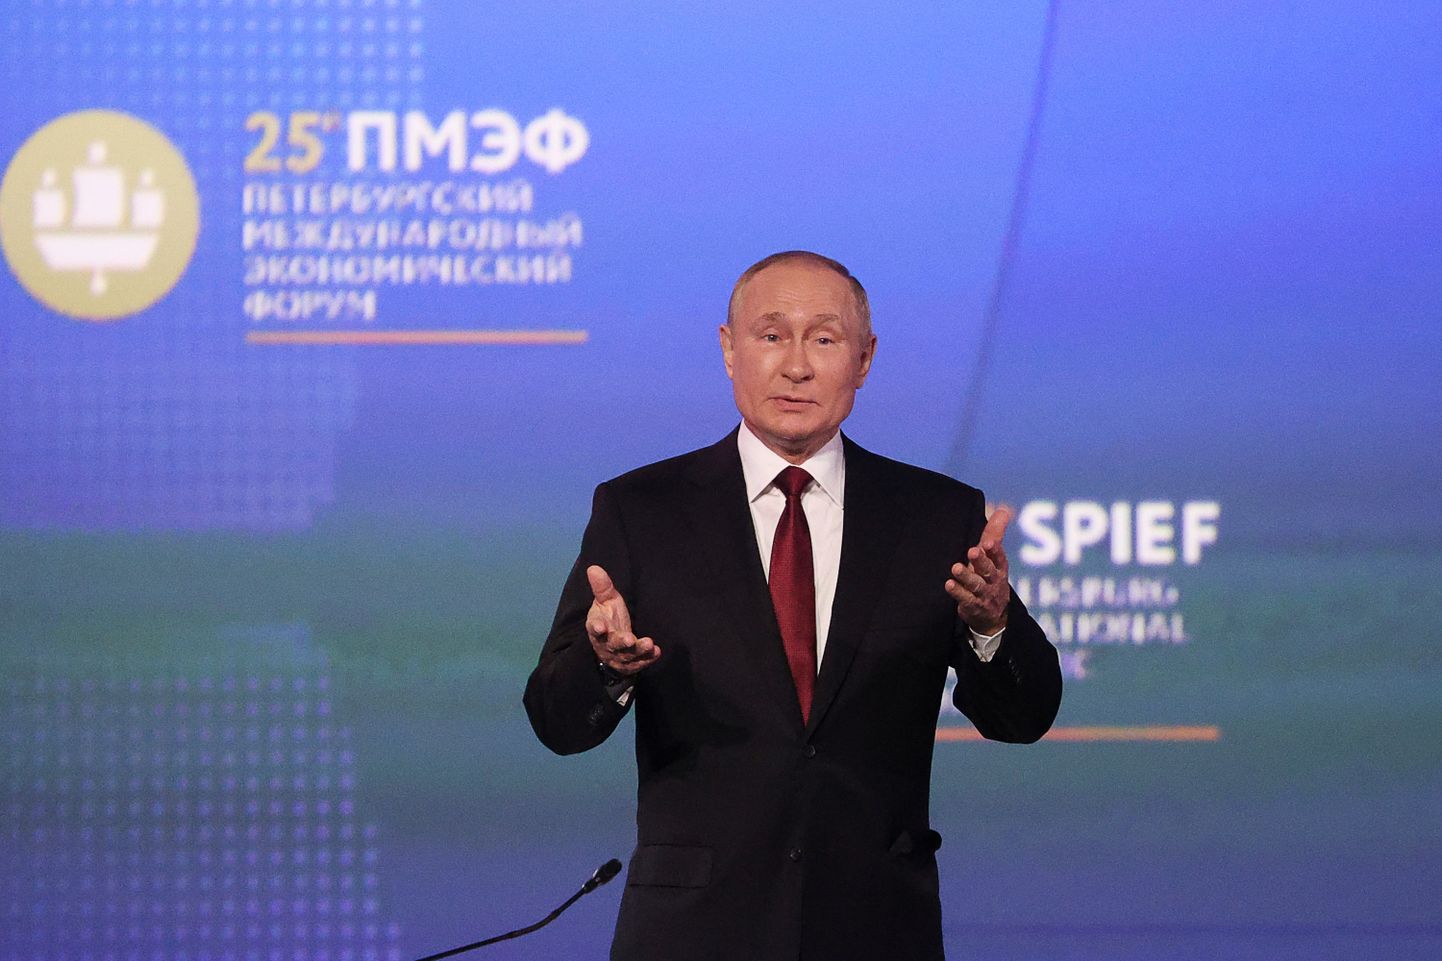 Venemaa president Vladimir Putin kõnelemas Peterburi rahvusvahelisel majandusfoorumil 17. juunil 2022.